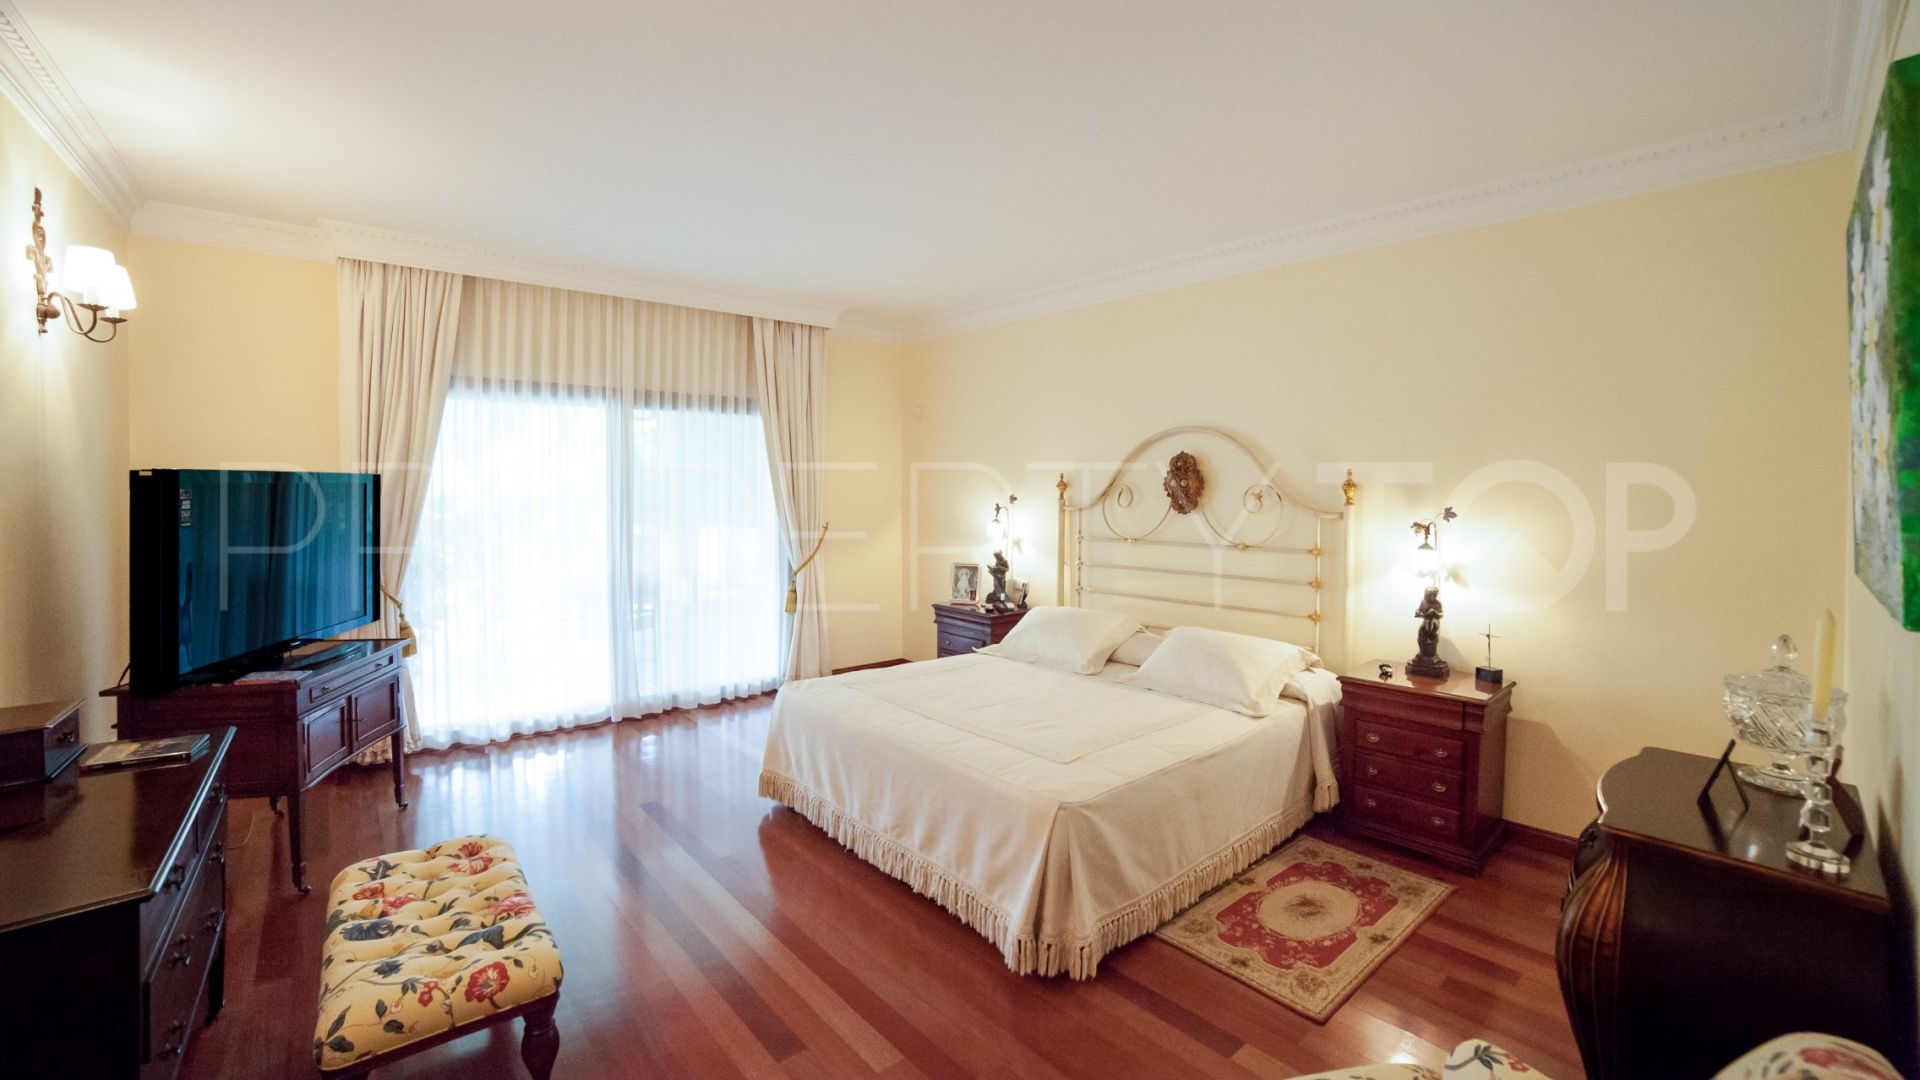 For sale 4 bedrooms villa in Altos Reales